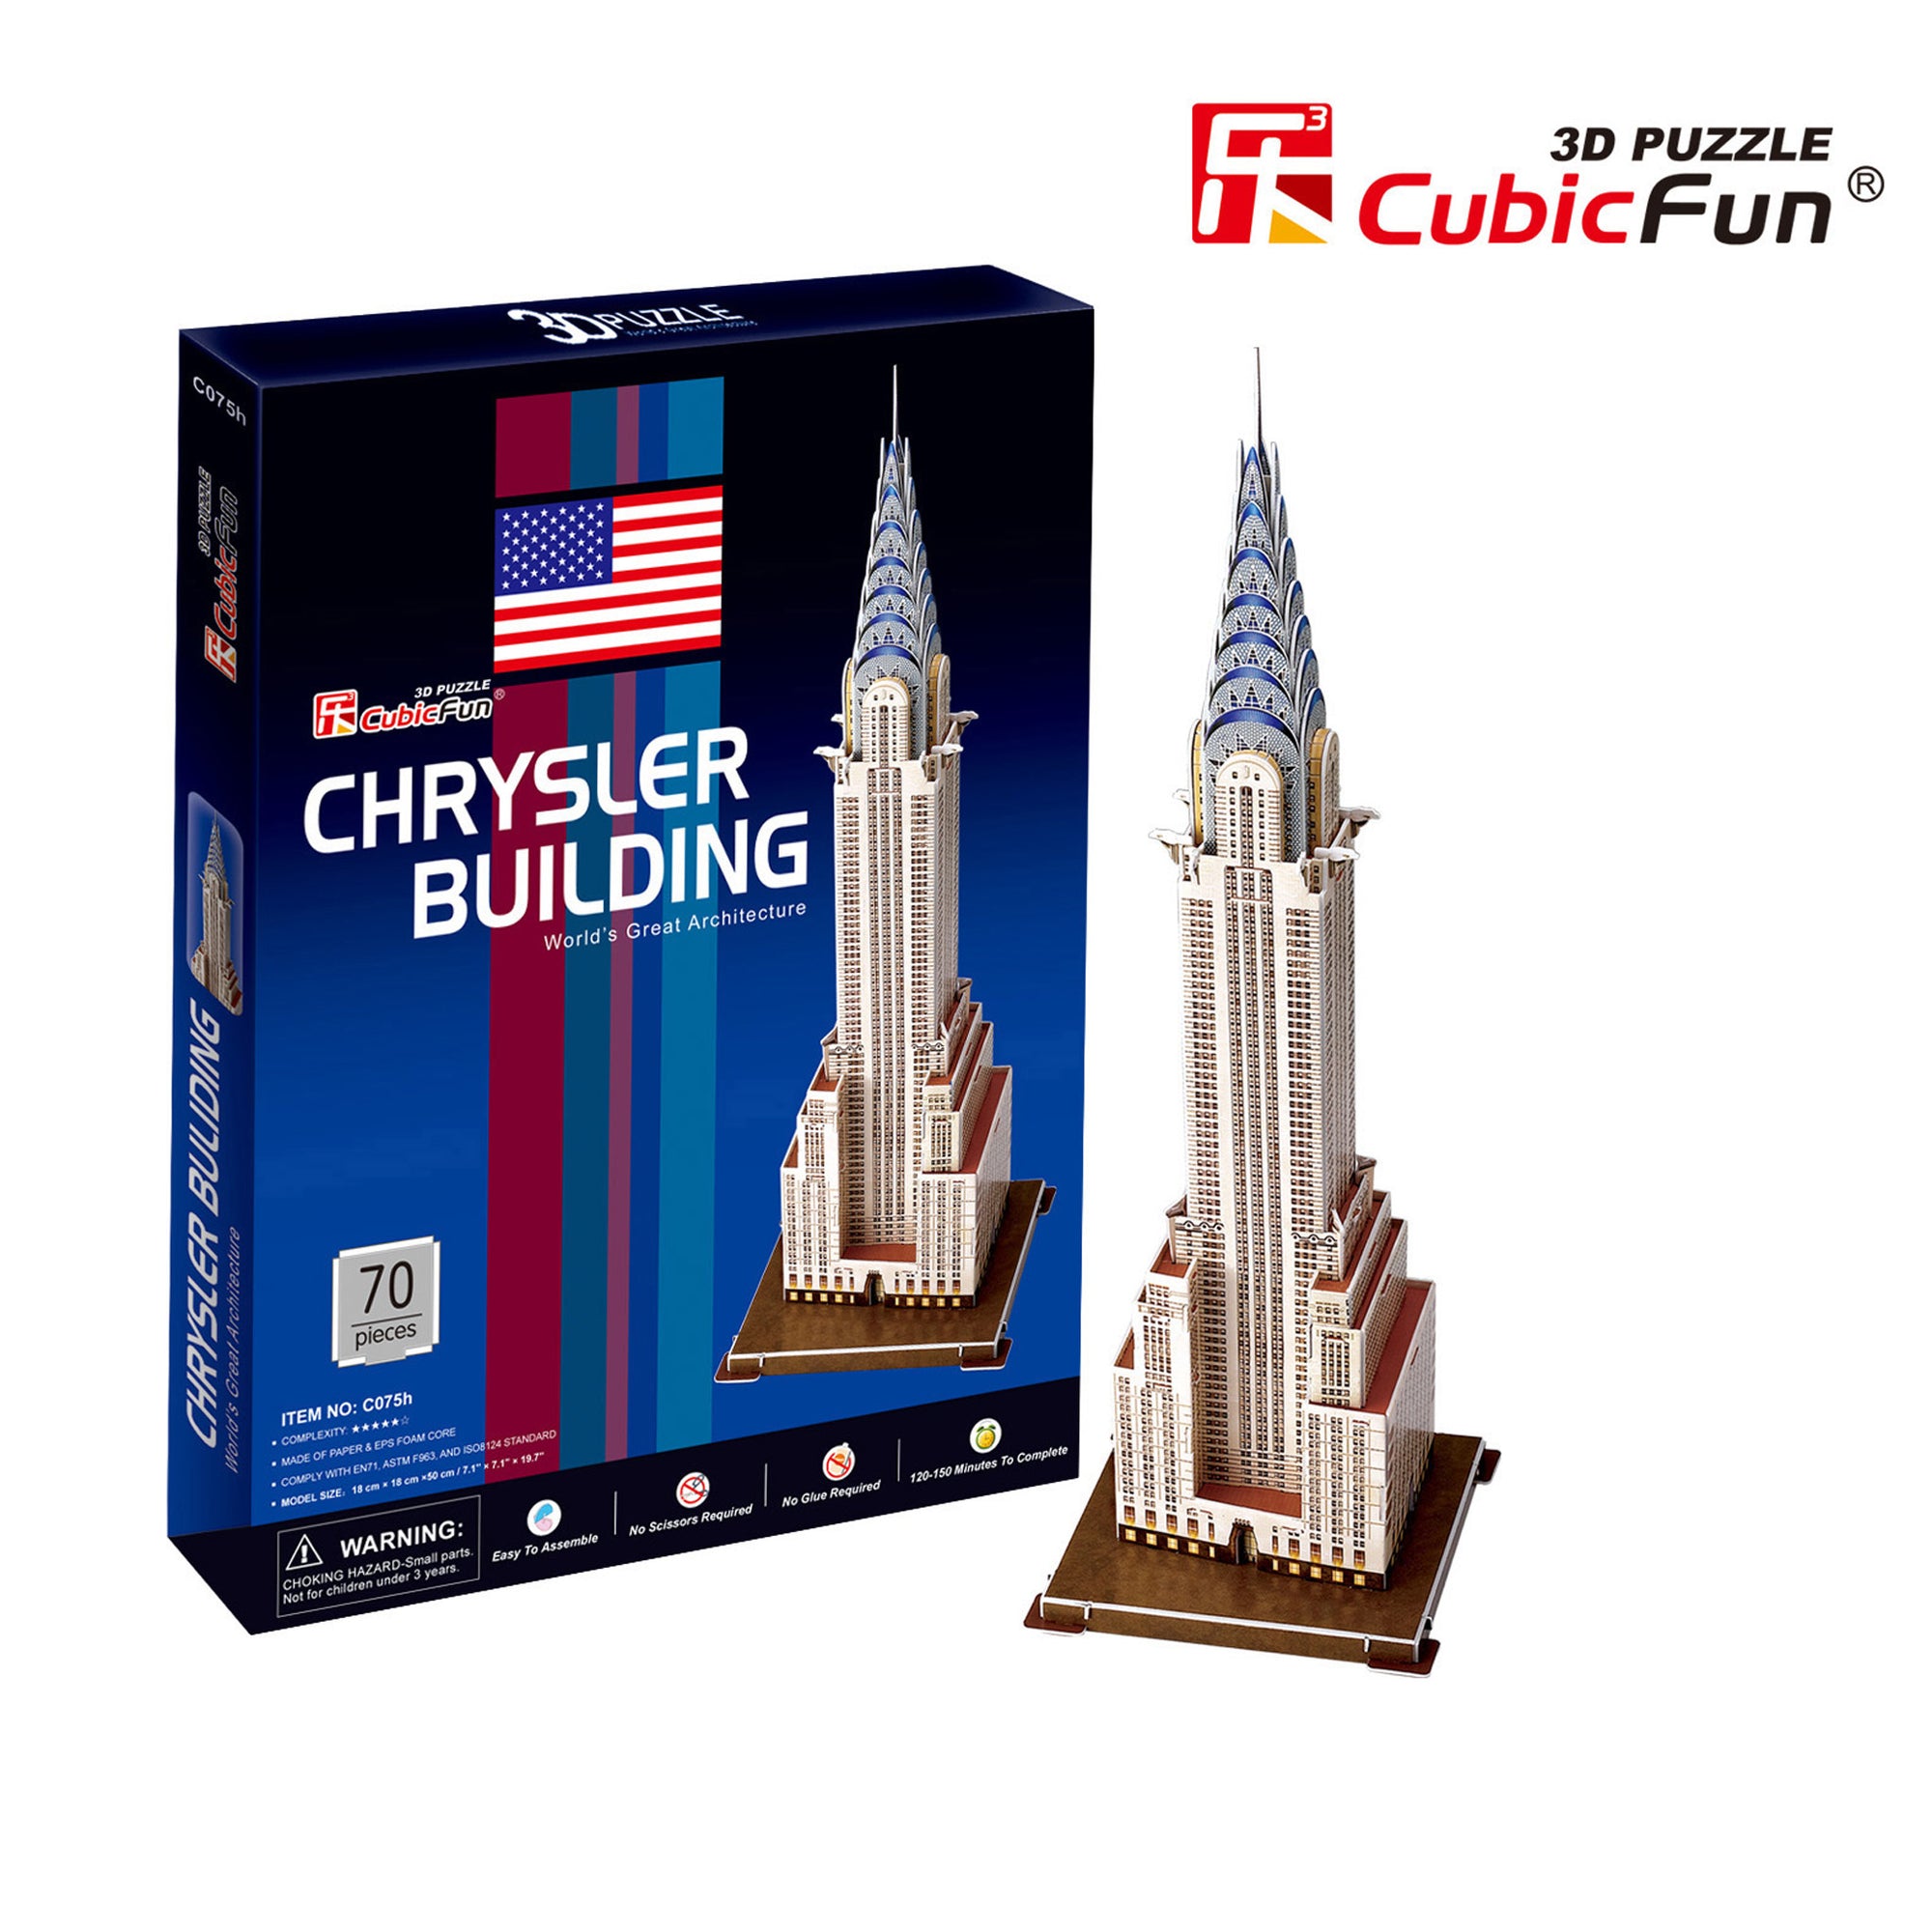 Chrysler Building, 70pc 3D Puzzle